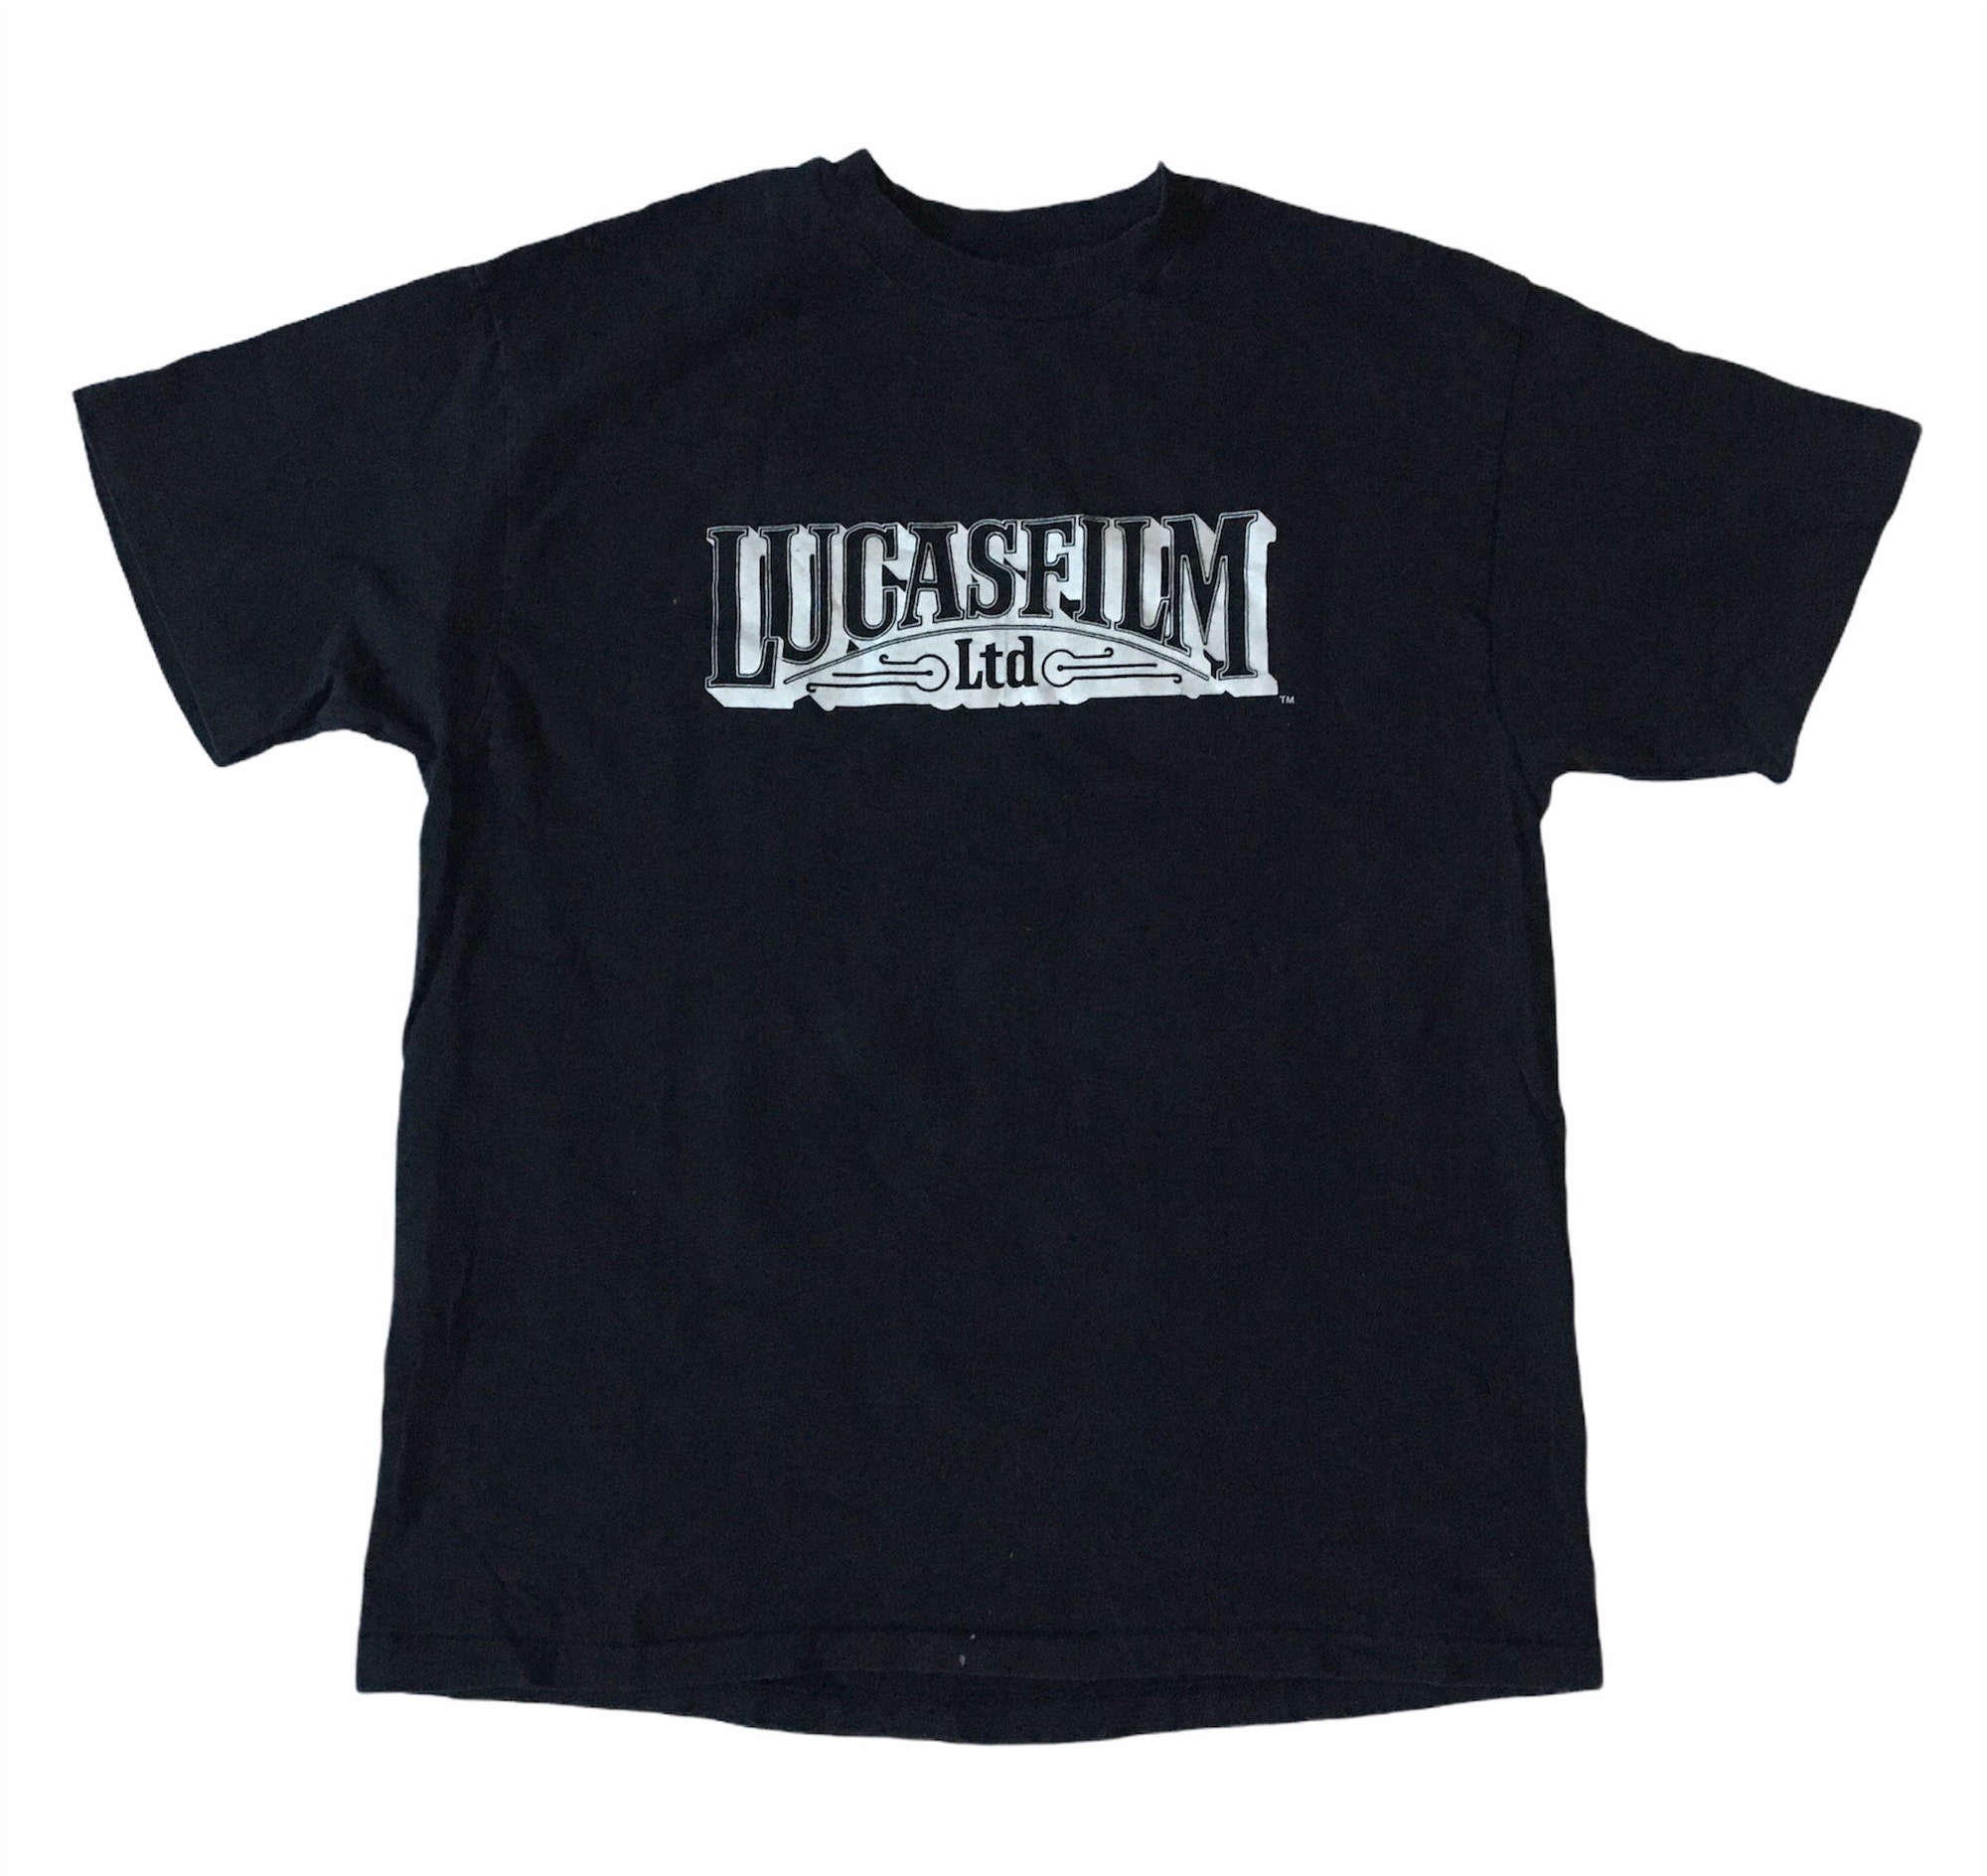 Vintage 90s Lucasfilm Movie Production T-Shirt